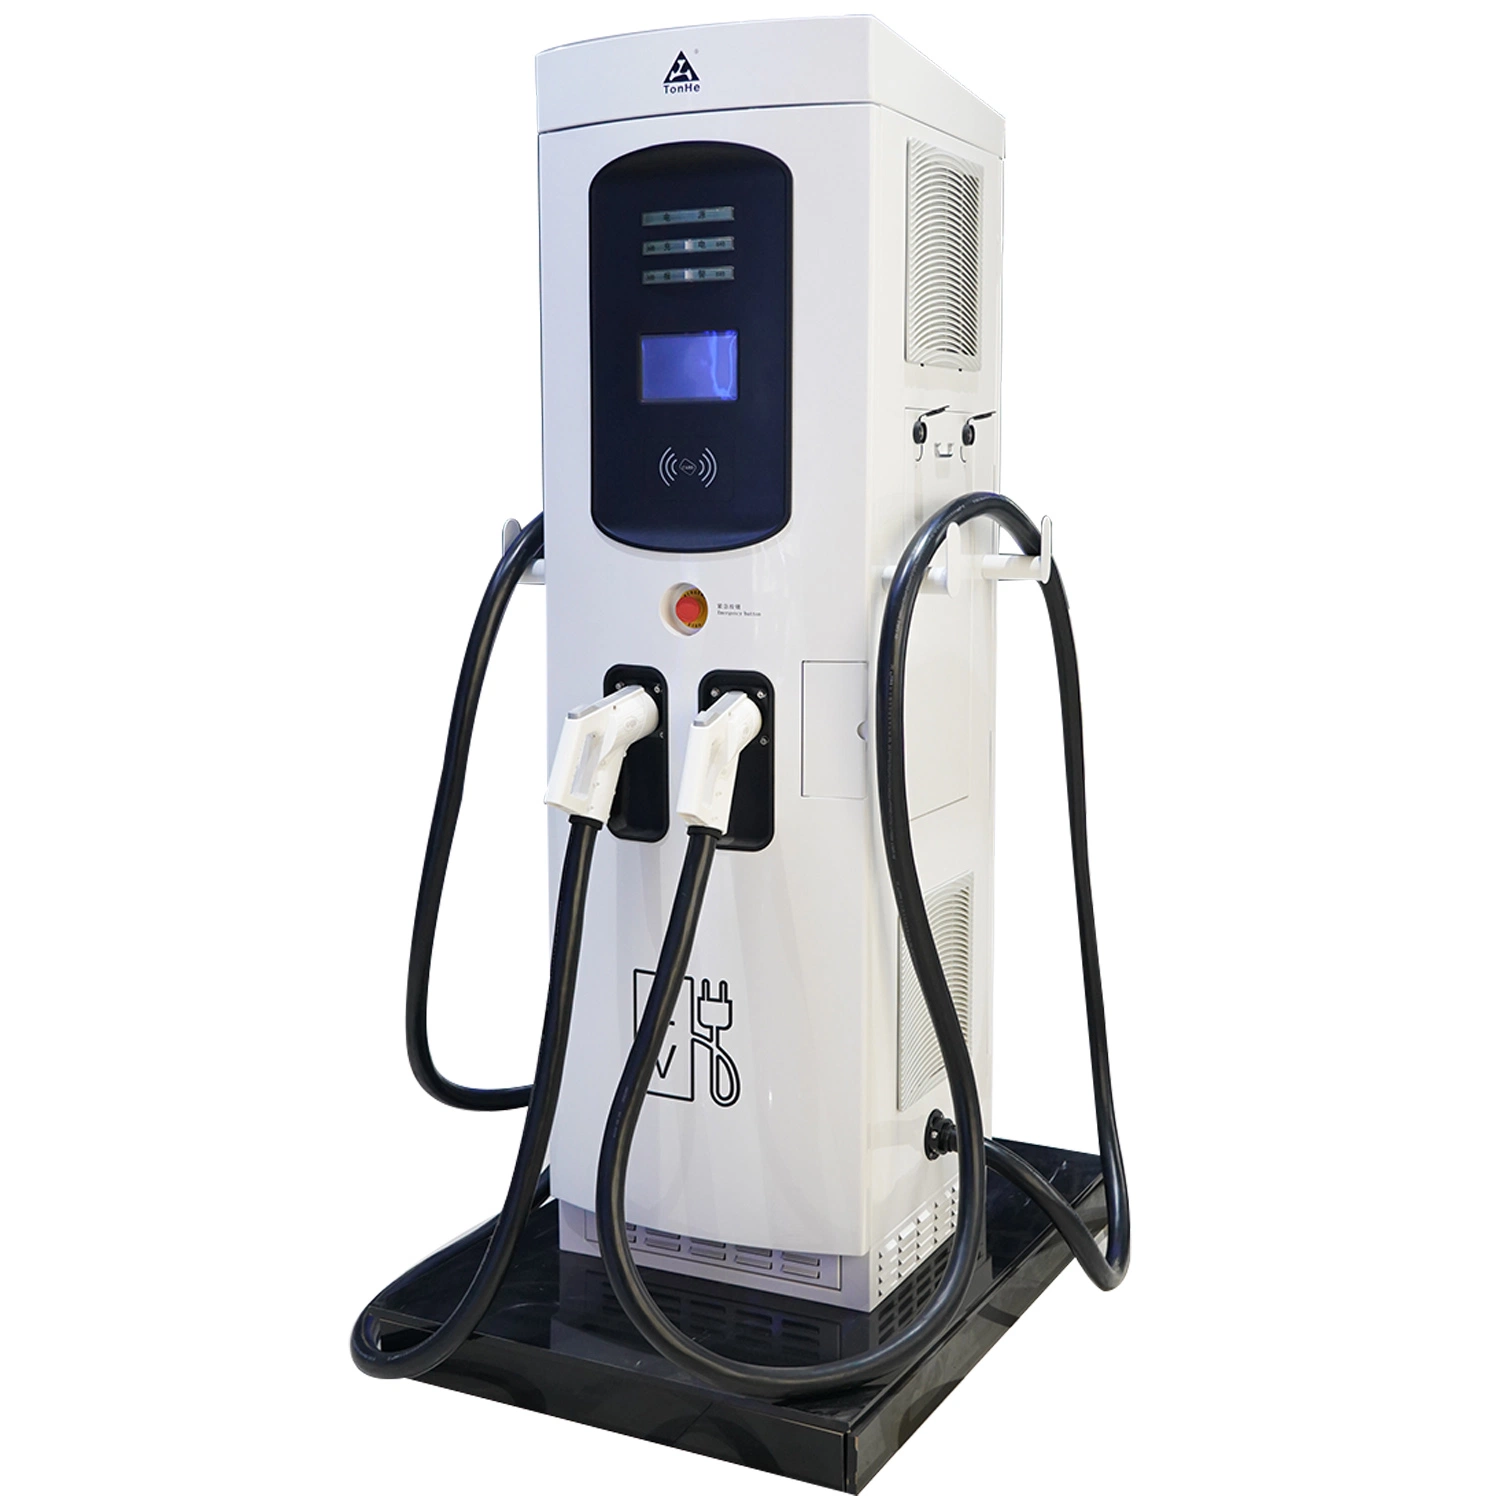 120kw/240kw Station de recharge rapide pour véhicules électriques avec chargeur de batterie Accessoires de charge intelligente Ocpp1.6 Chargeurs résidentiels pour véhicules électriques